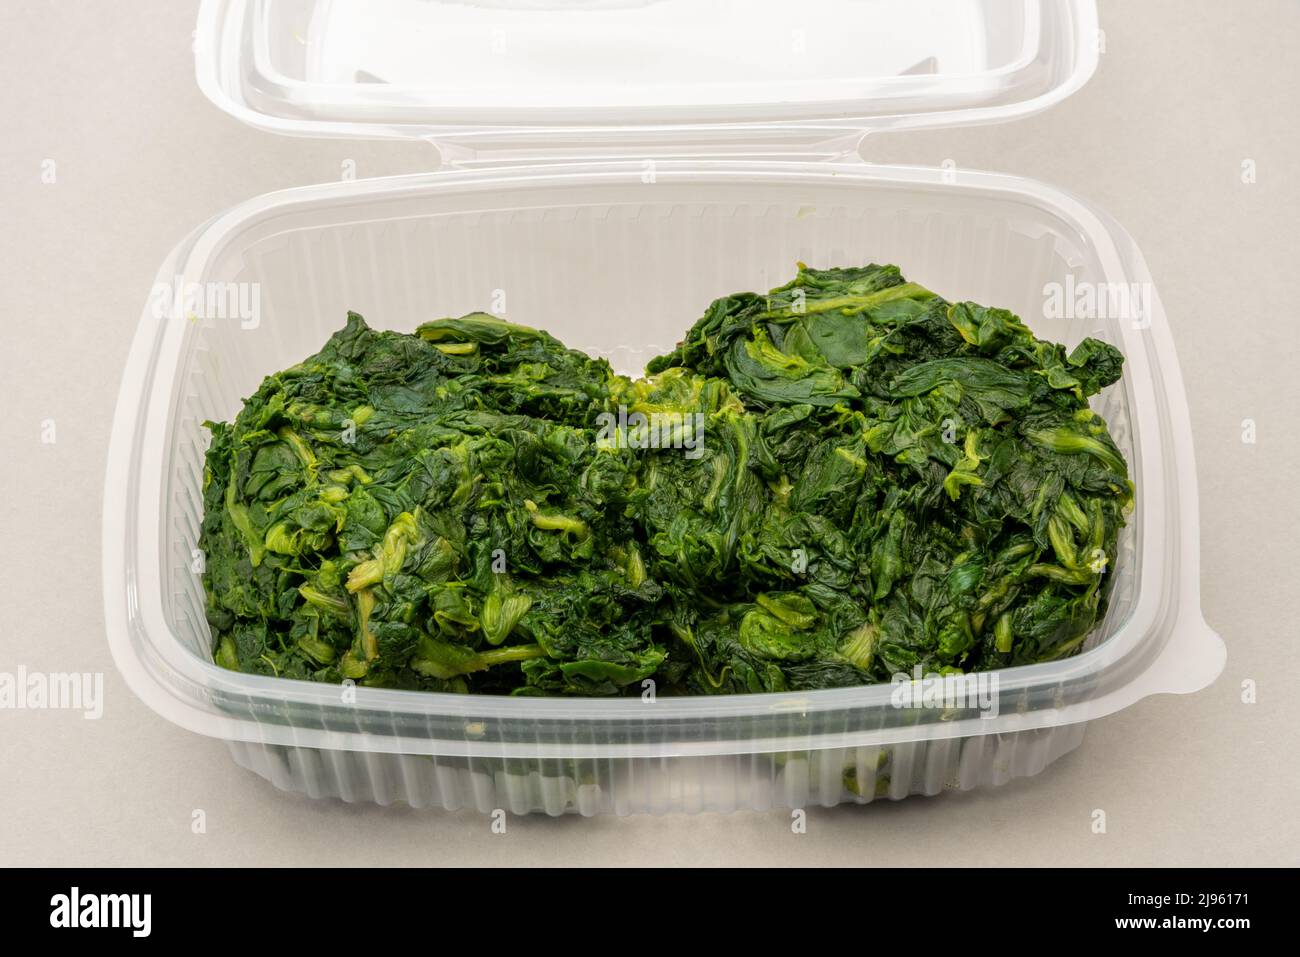 Spinaci bolliti in scatola di plastica trasparente per alimenti per refrigerazione o conservazione, su sfondo grigio chiaro Foto Stock